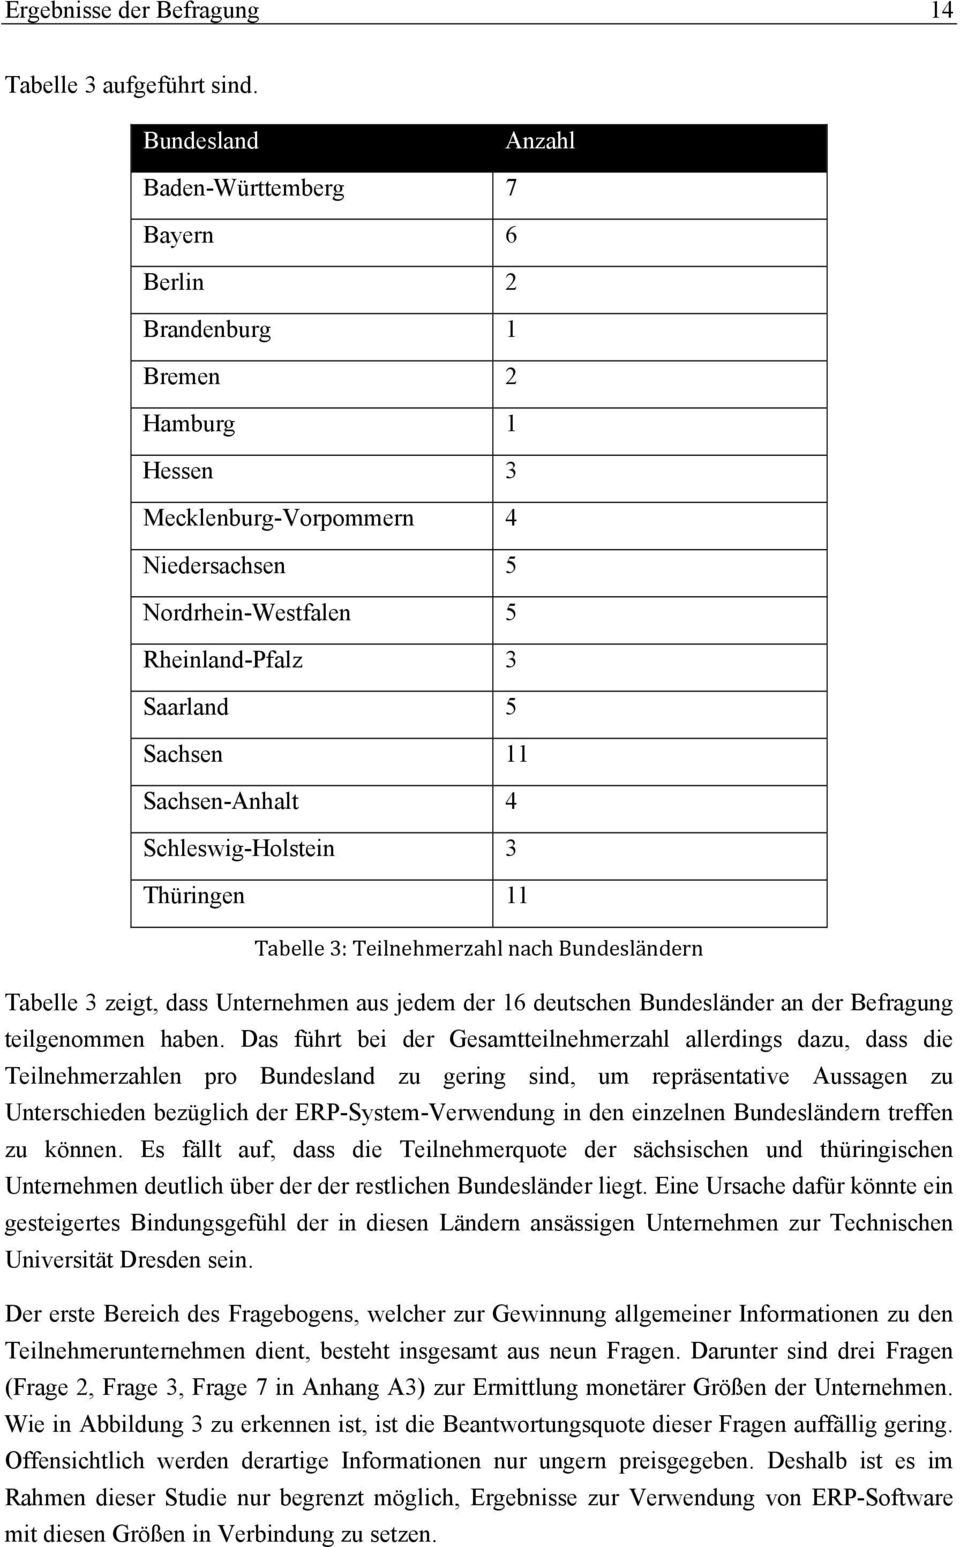 11 Sachsen-Anhalt 4 Schleswig-Holstein 3 Thüringen 11 Tabelle 3: Teilnehmerzahl nach Bundesländern Tabelle 3 zeigt, dass Unternehmen aus jedem der 16 deutschen Bundesländer an der Befragung